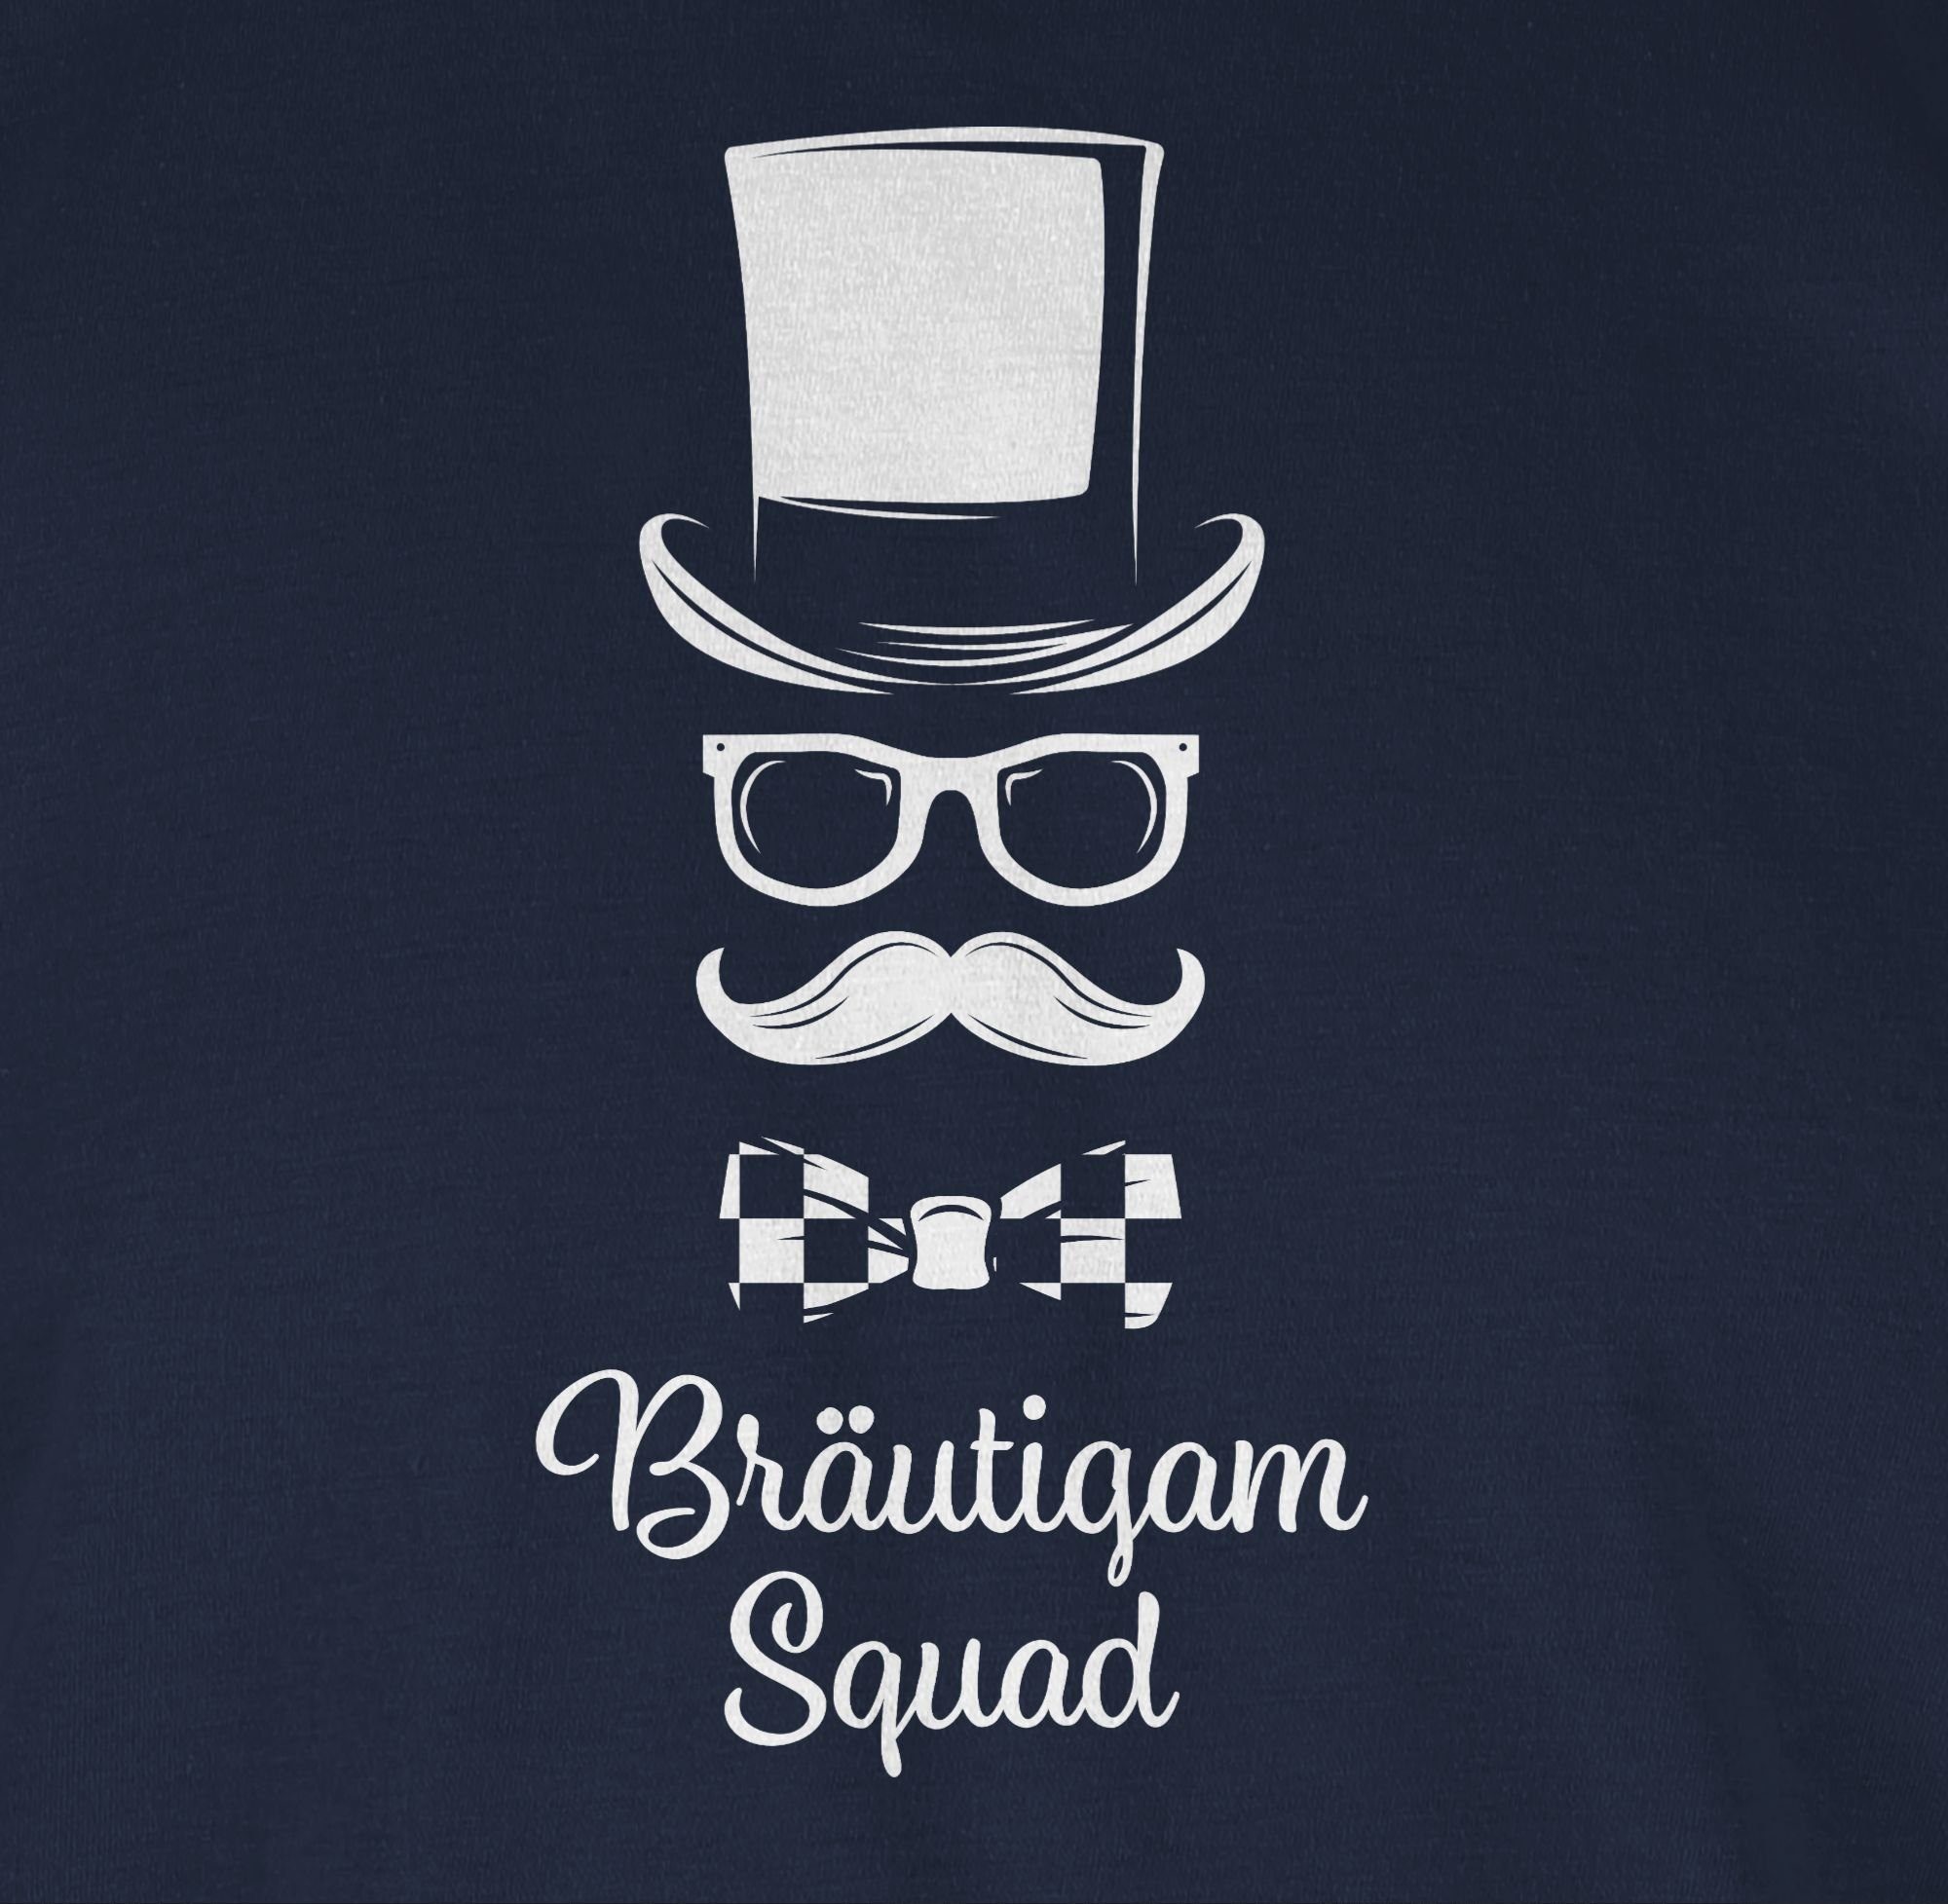 02 Squad Gentleman Shirtracer T-Shirt Männer JGA Navy Bräutigam Blau